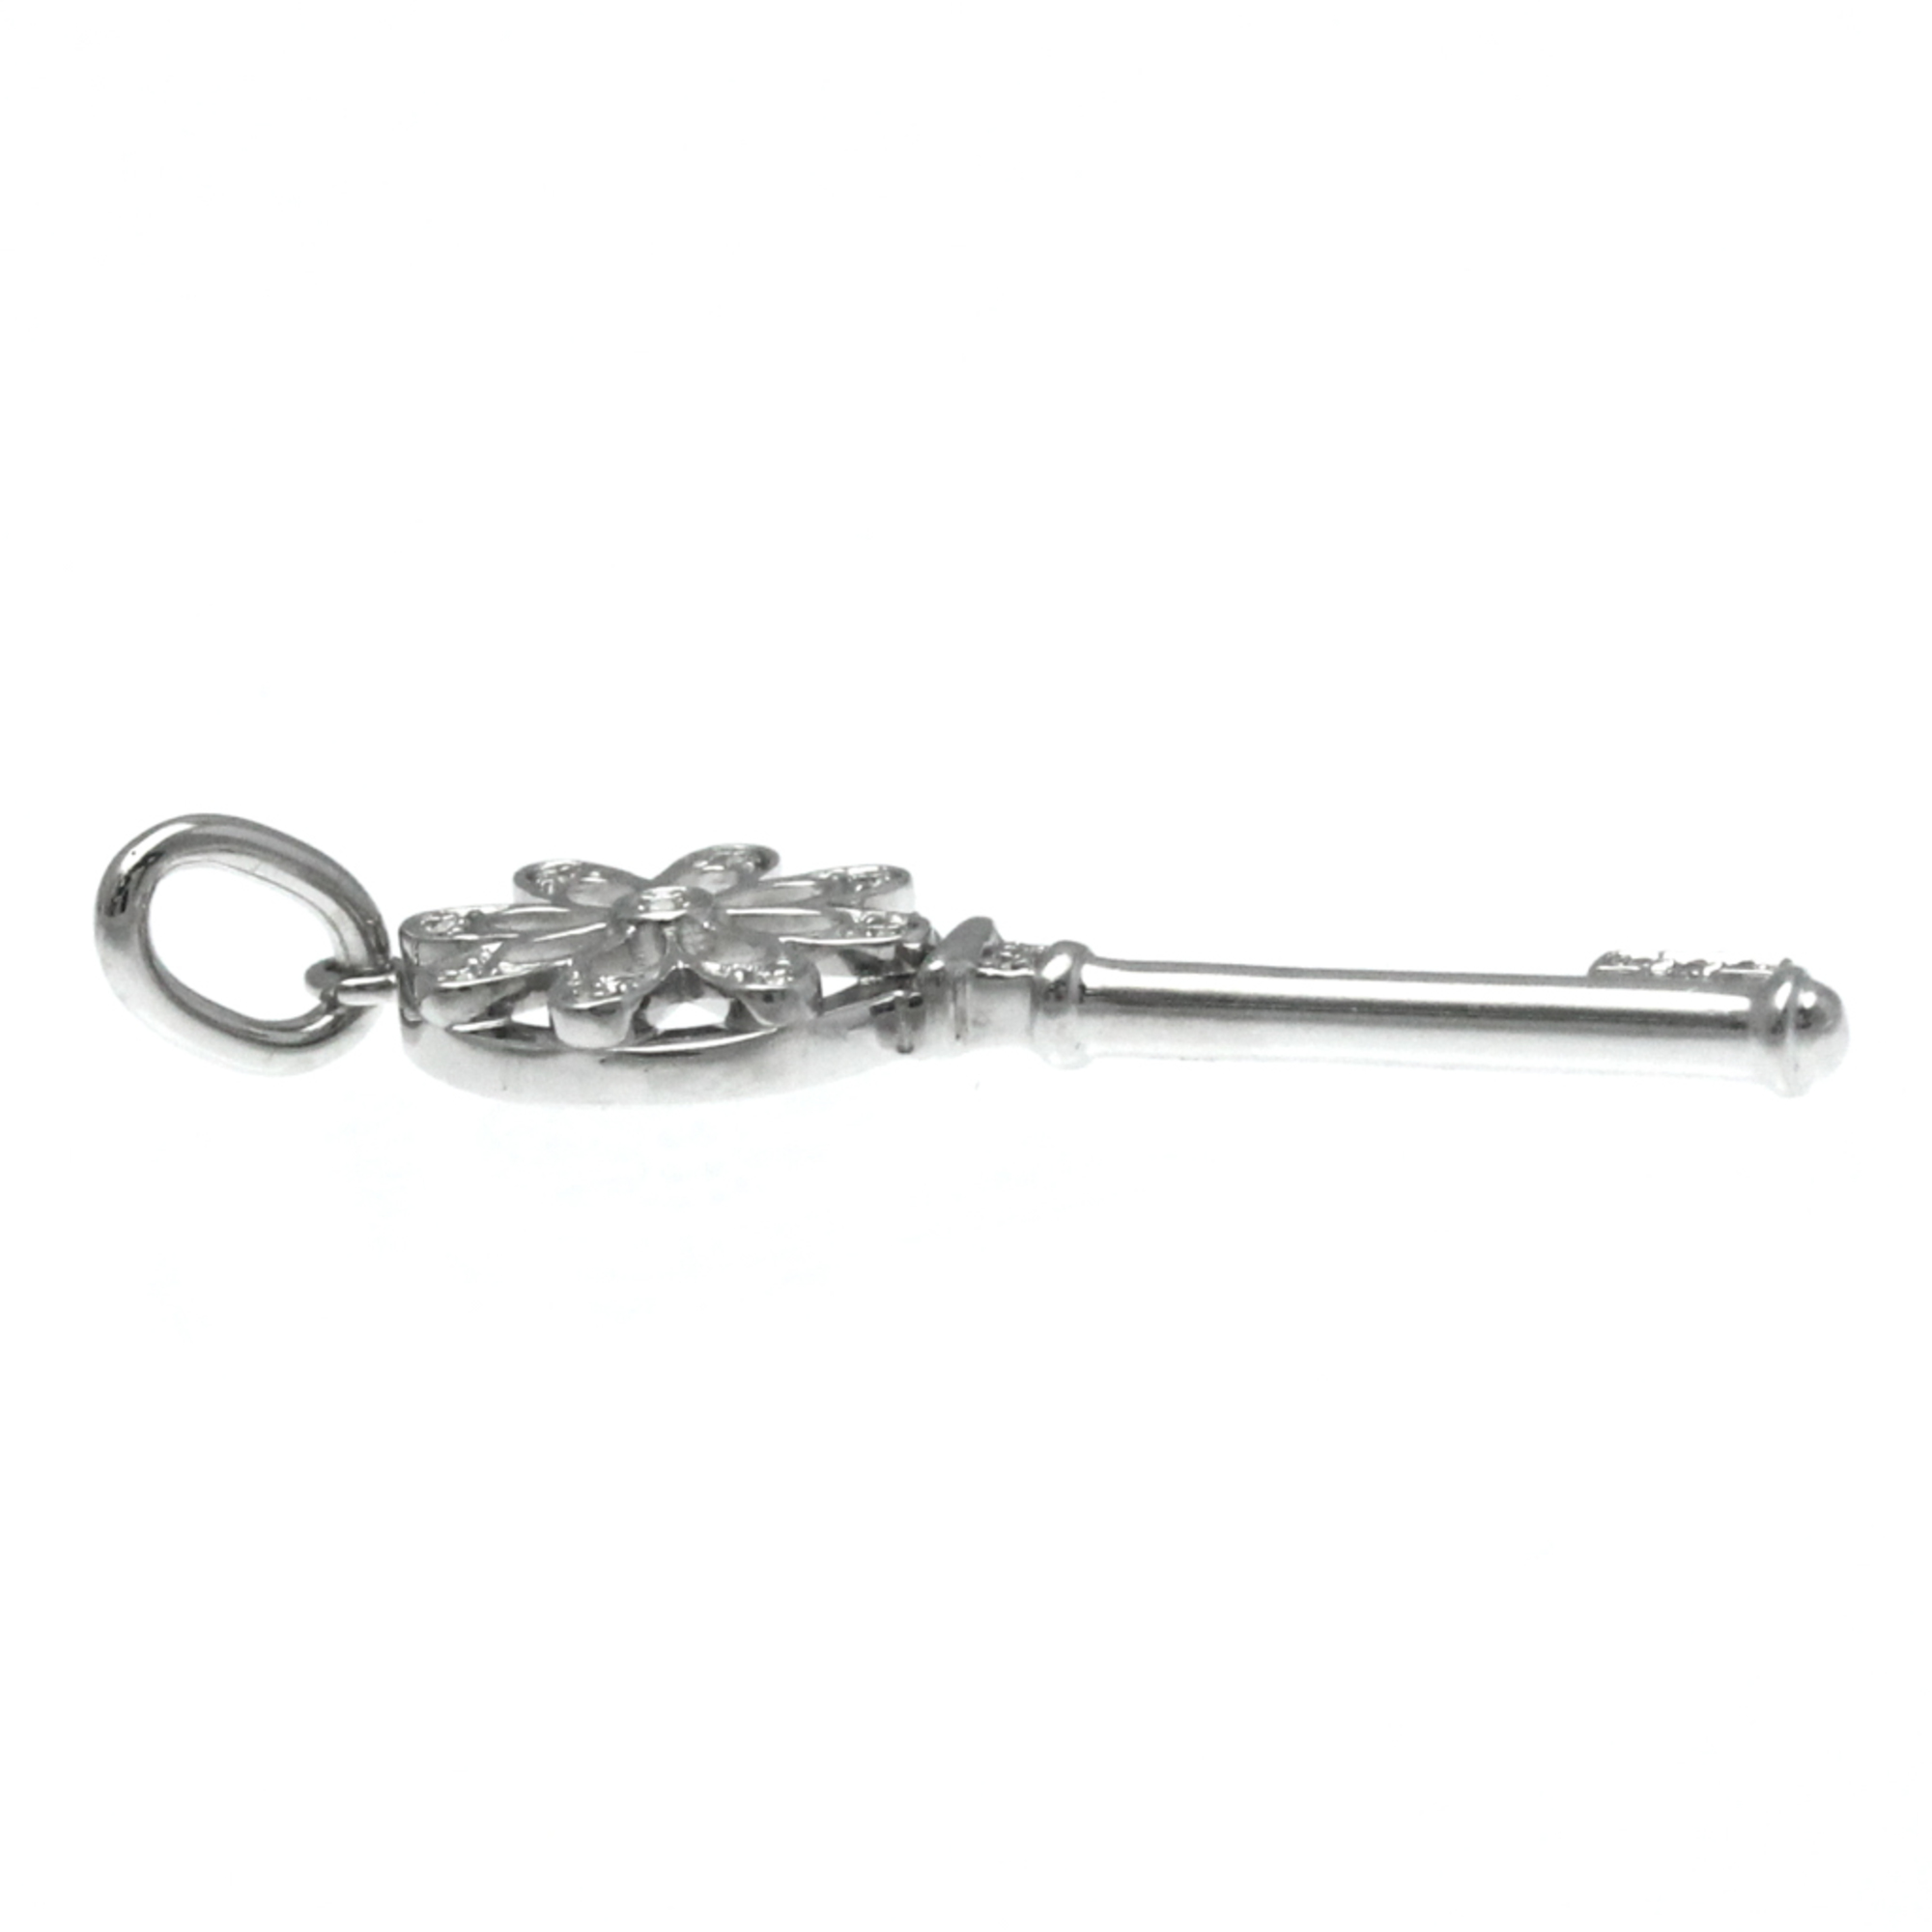 Tiffany Floral Key Charm White Gold (18K) Diamond Men,Women Fashion Pendant Necklace (Silver)